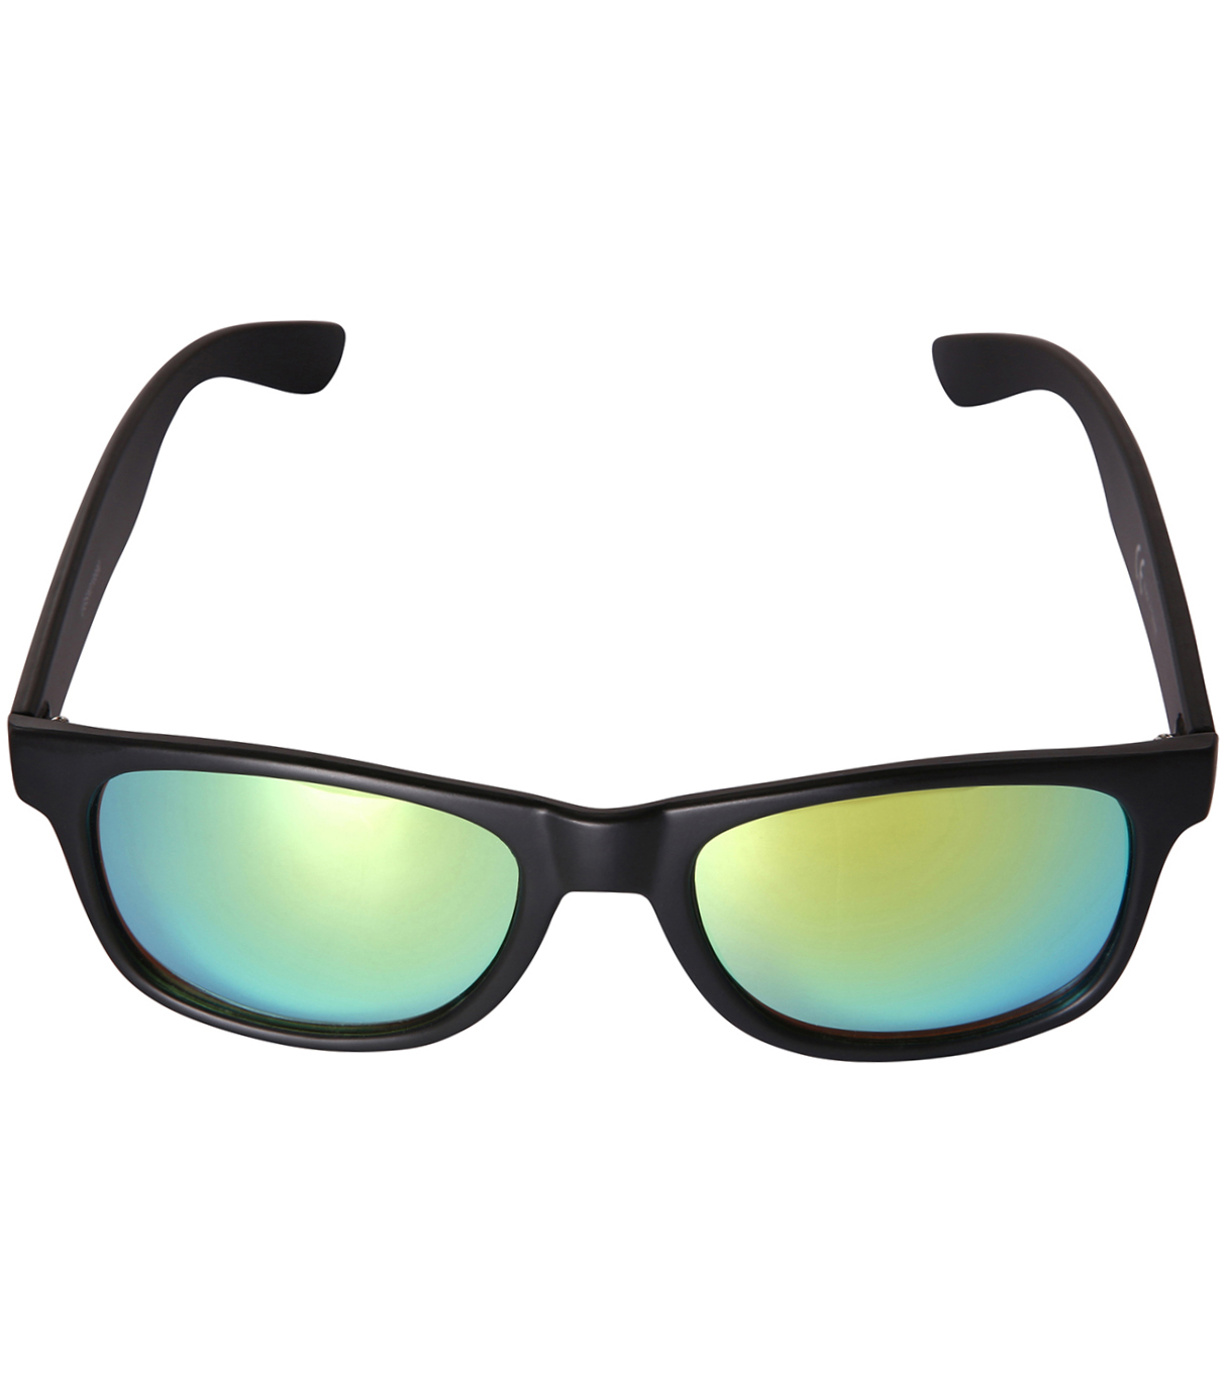 Unisex sportovní brýle RANDE ALPINE PRO černá